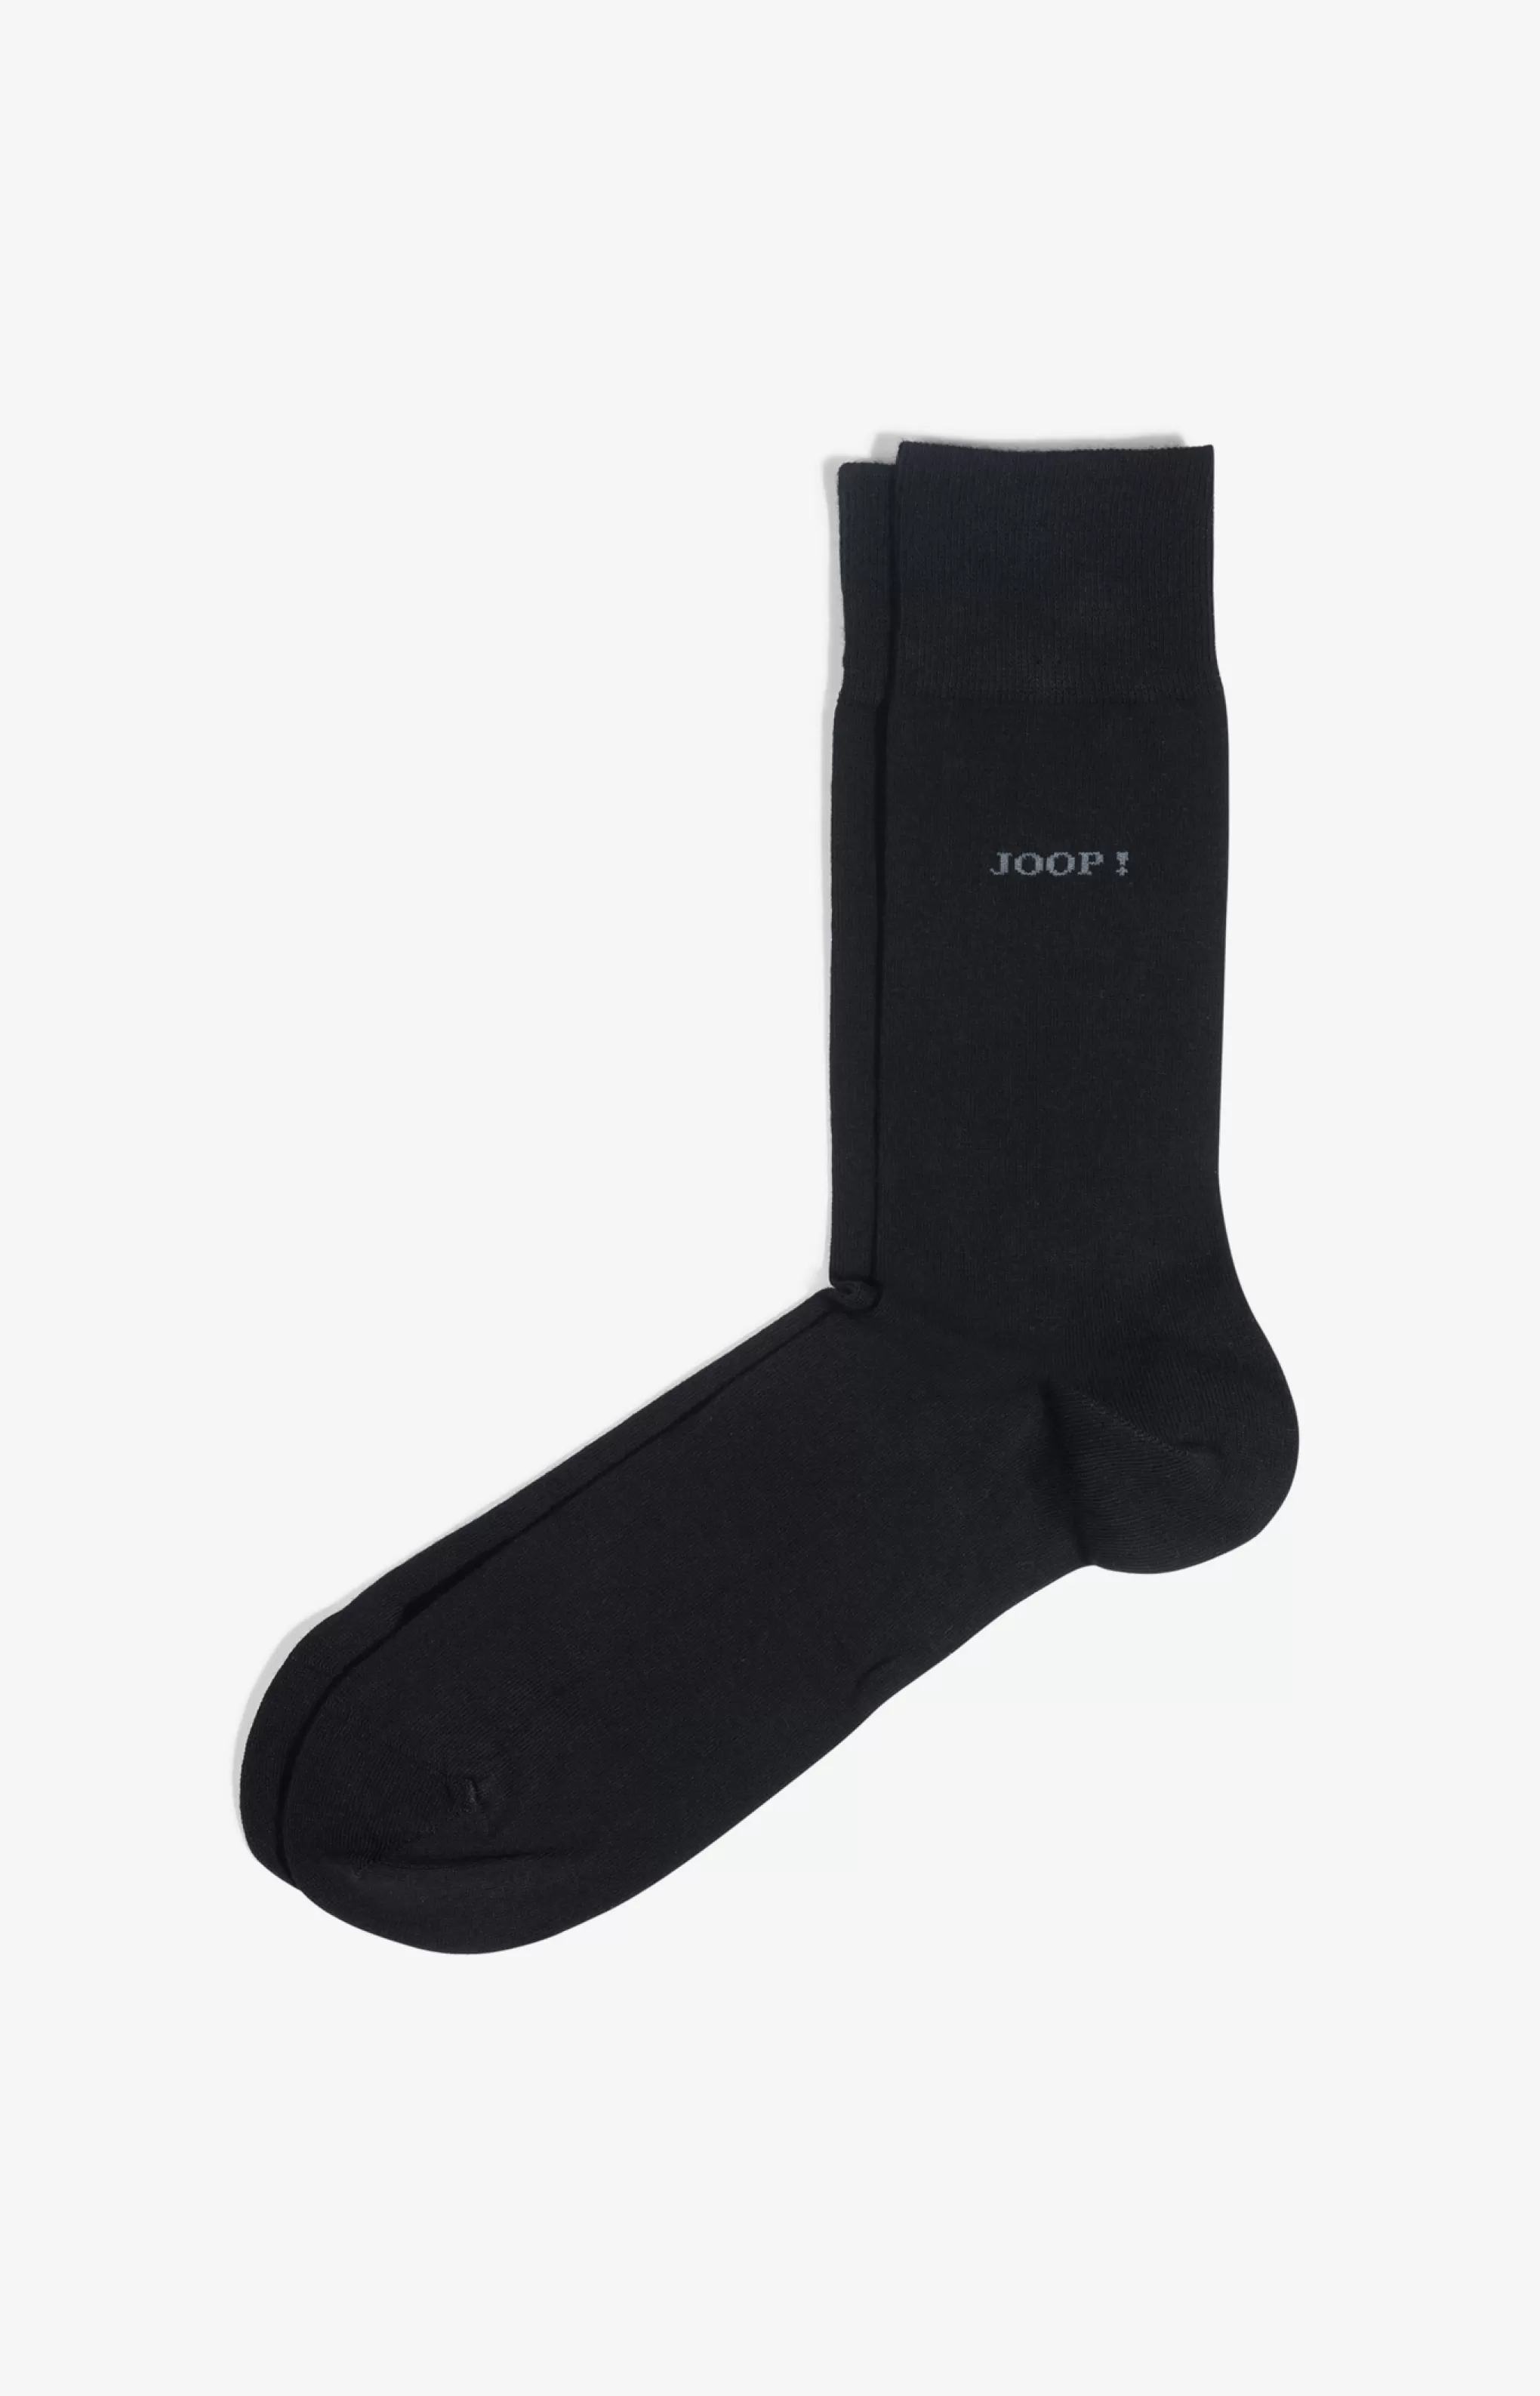 Socks*JOOP Socks Superior cotton socks in